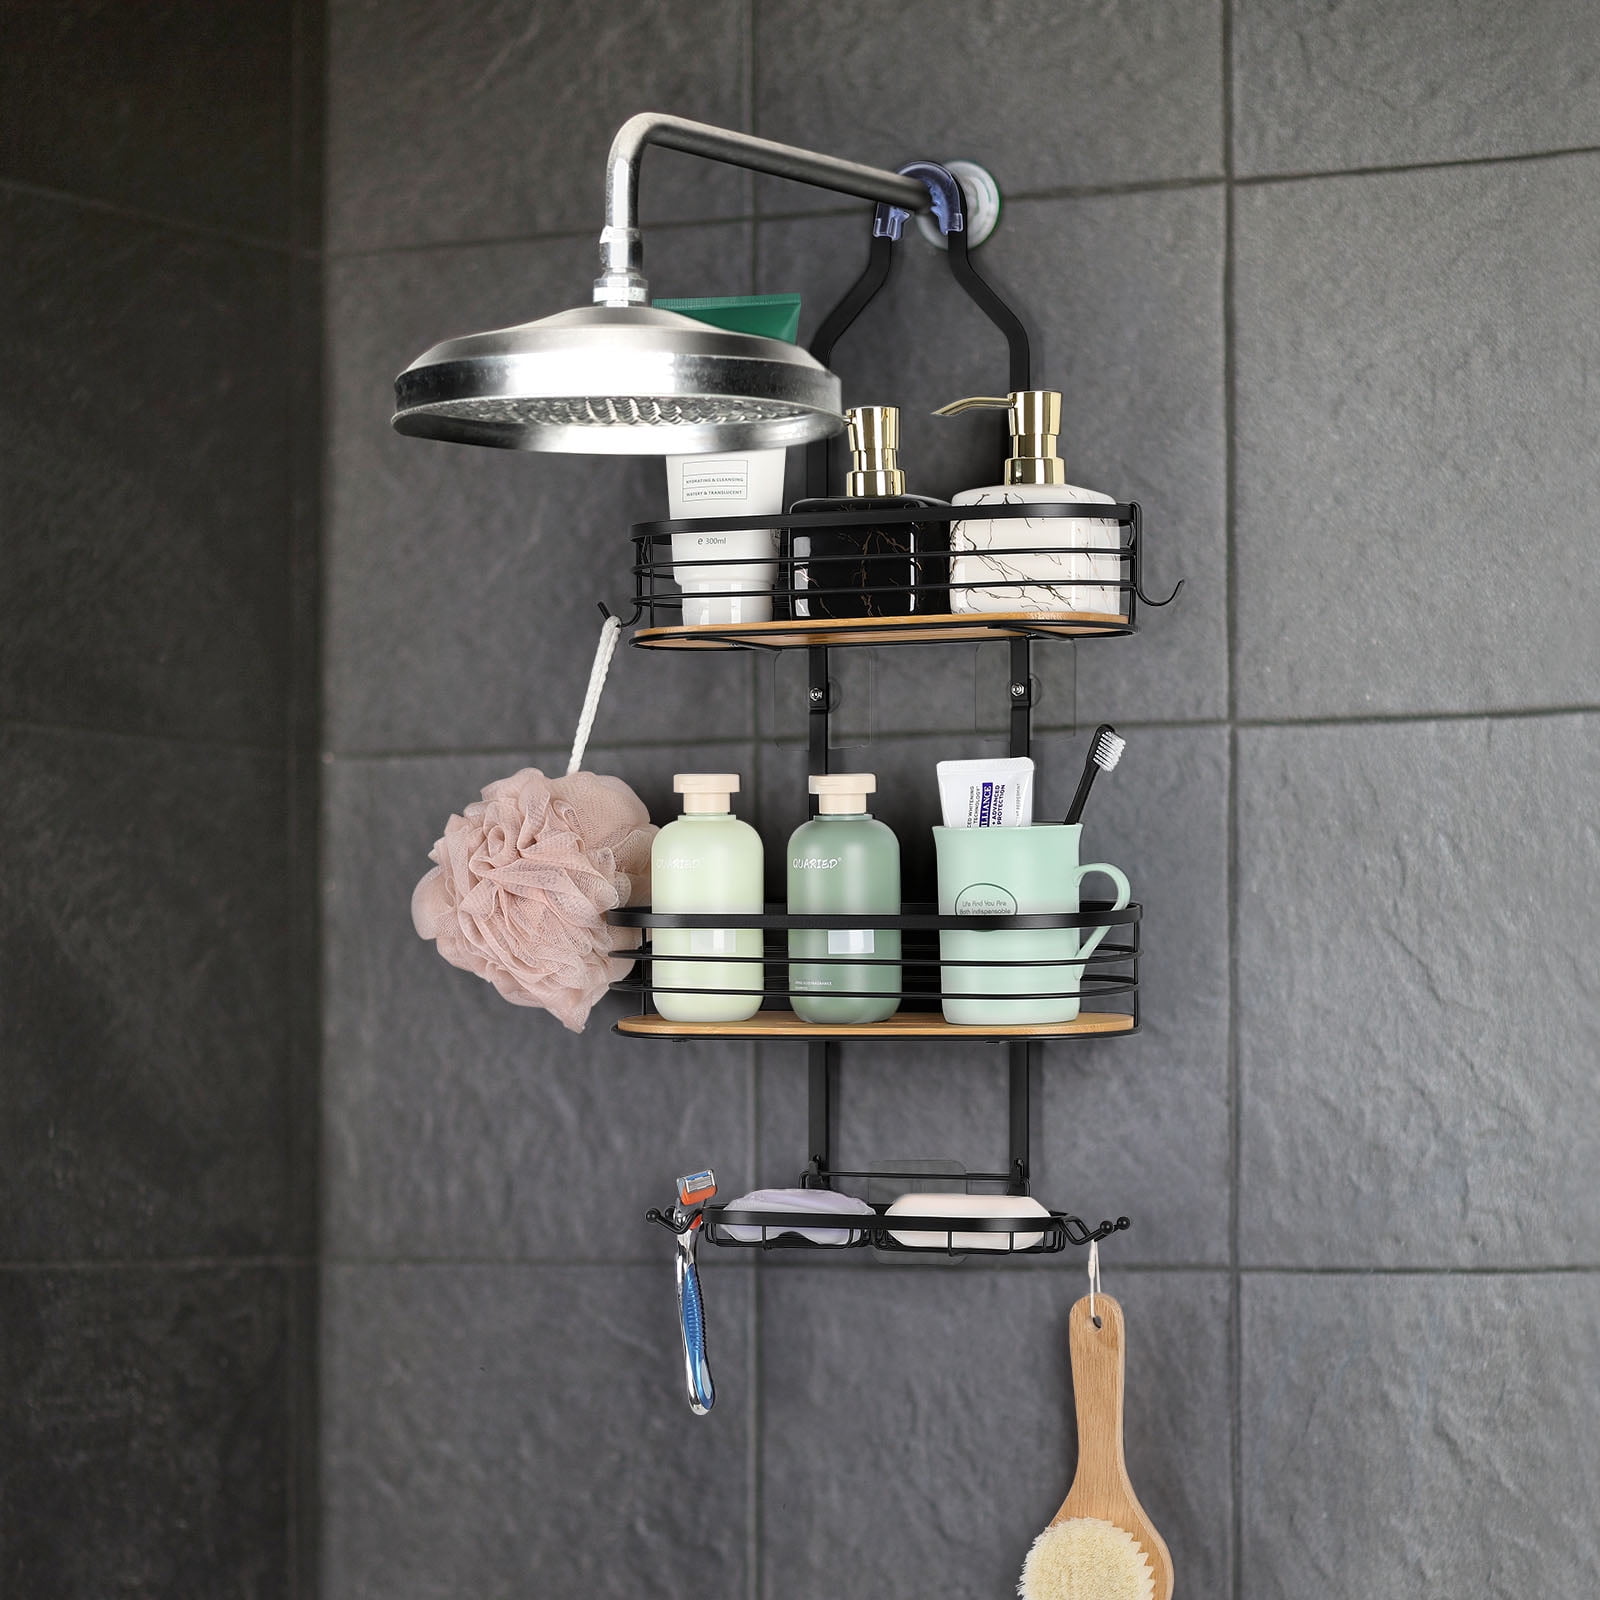 HUFTGOLD Over Head Shower Organizer, Hanging Bathroom Storage Rack with Soap Holder and Hooks, 3-Shelf Shower Caddy Basket, HG0018AMKA